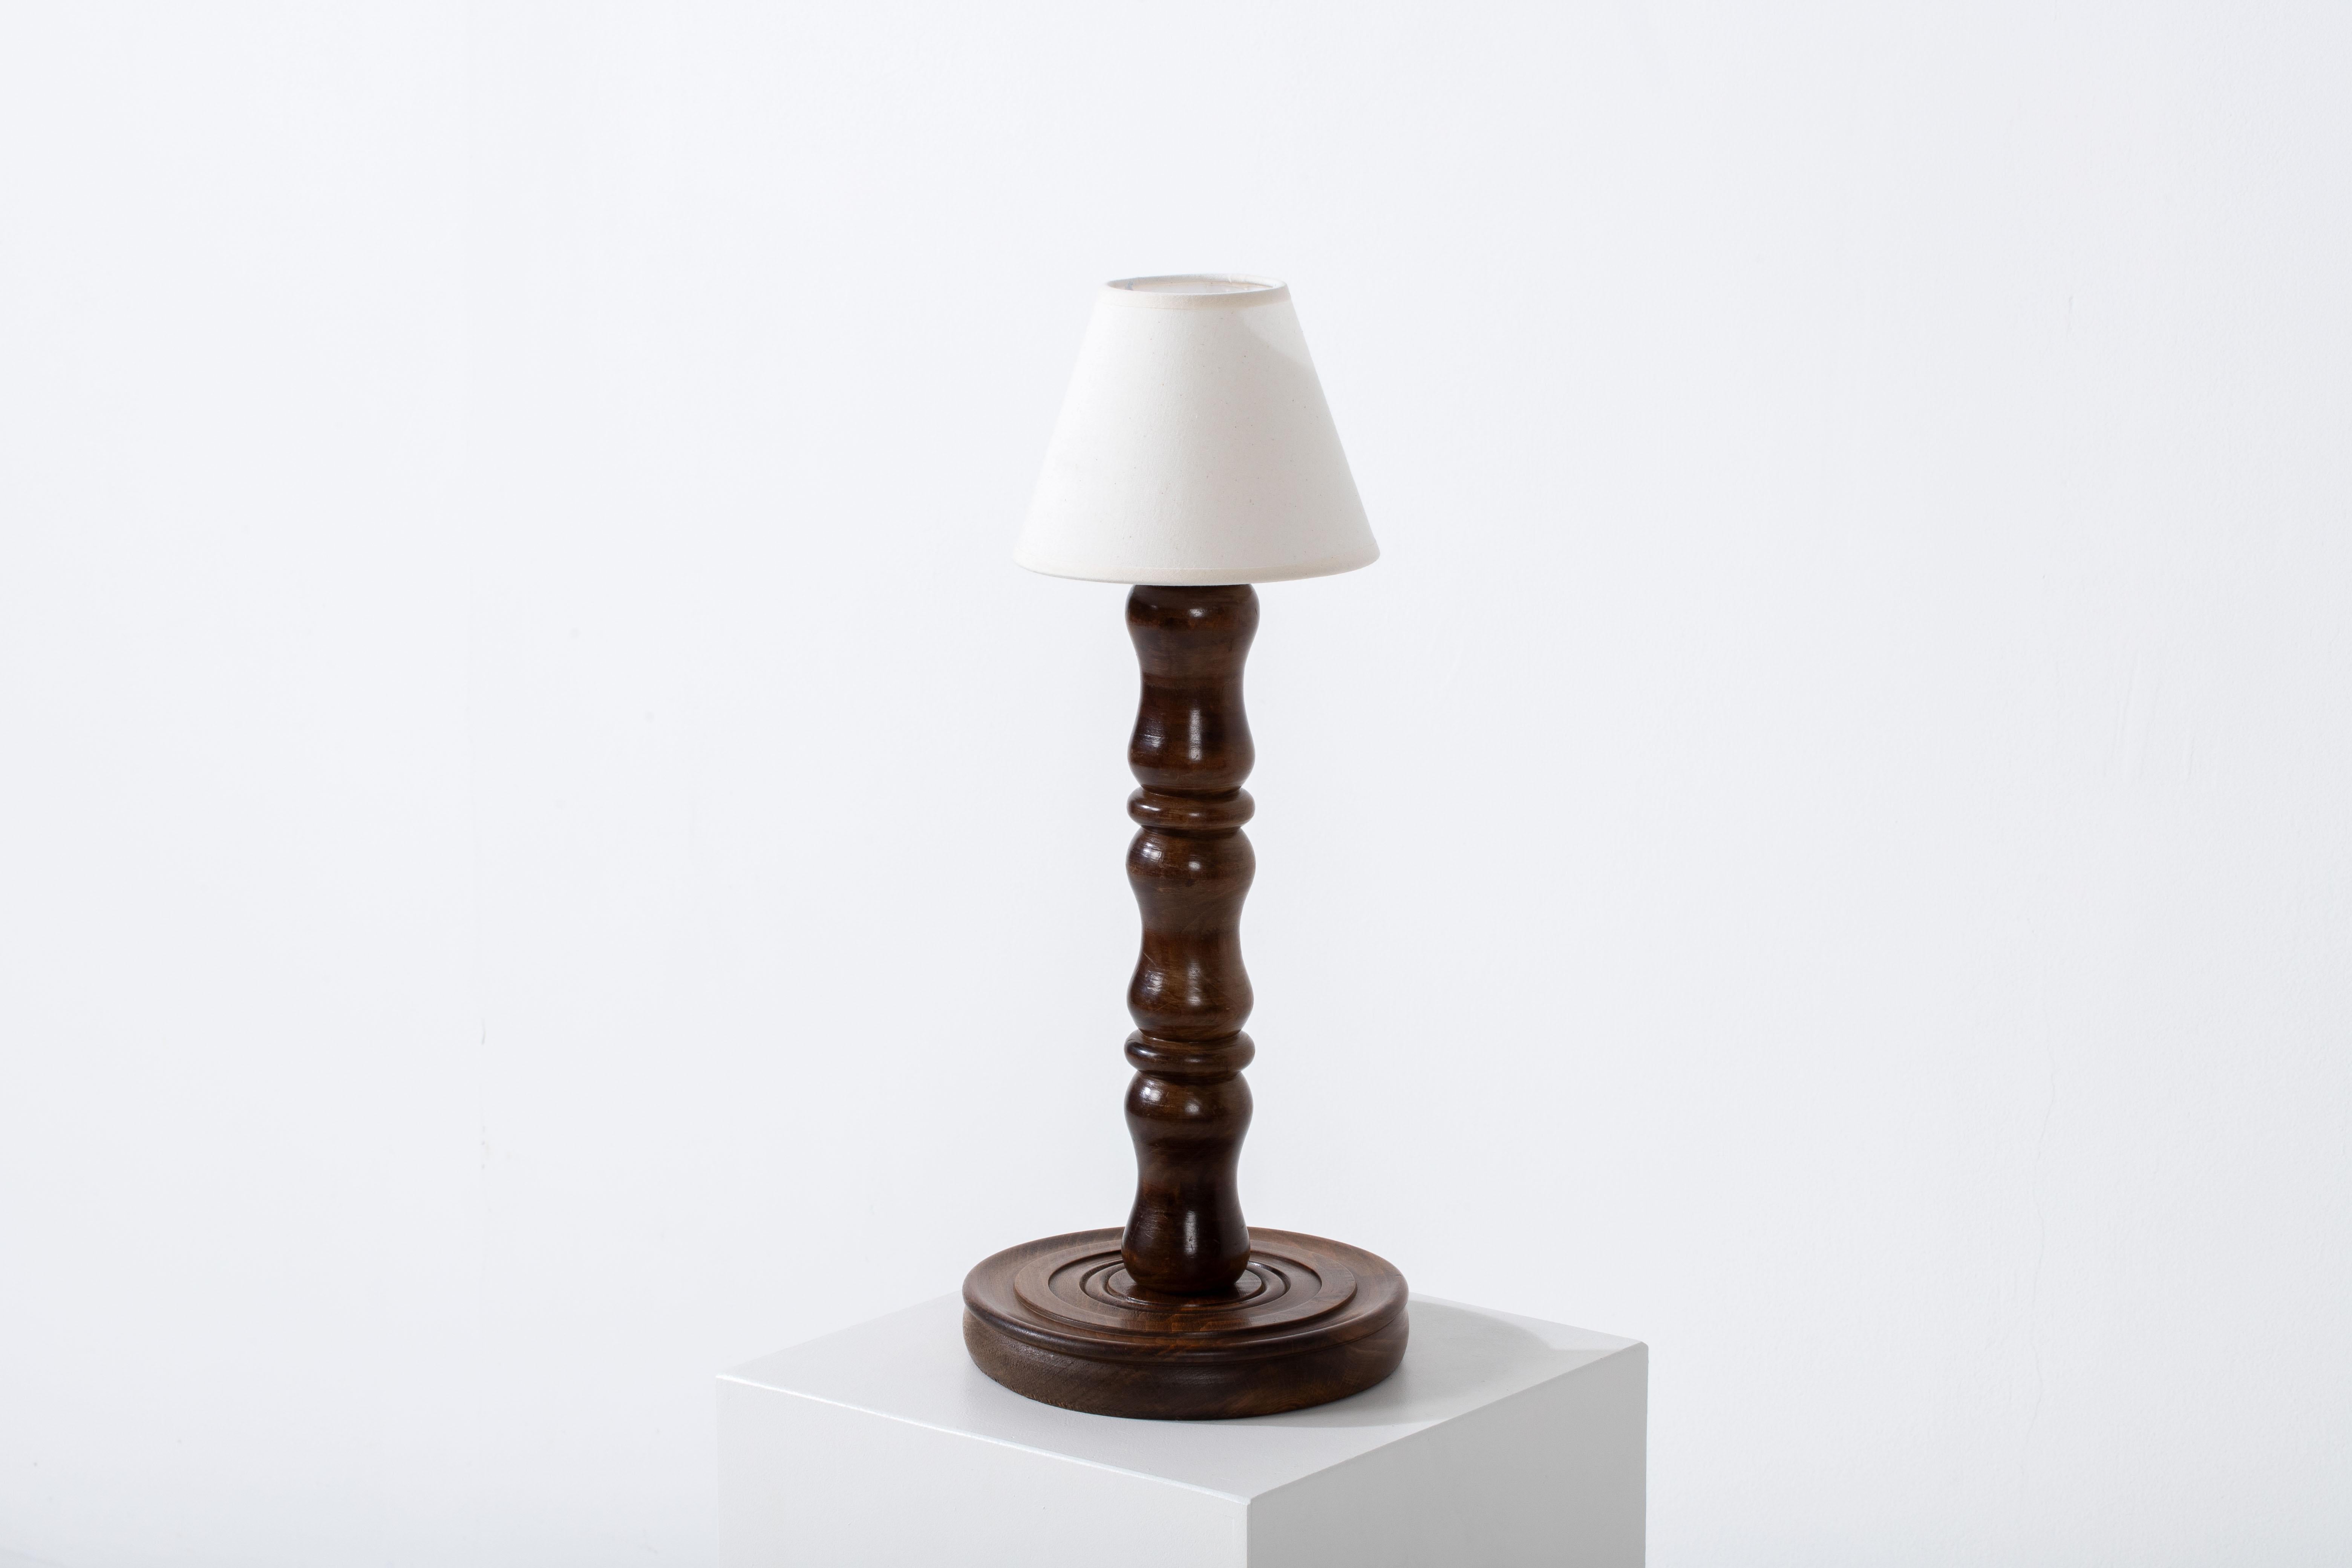 Illuminez votre espace avec la lueur enchanteresse de cette exquise lampe de table, véritable incarnation de l'élégance française intemporelle. Fabriquée dans les années 1950, cette lampe mesure 42 cm de haut, ce qui en fait un complément polyvalent